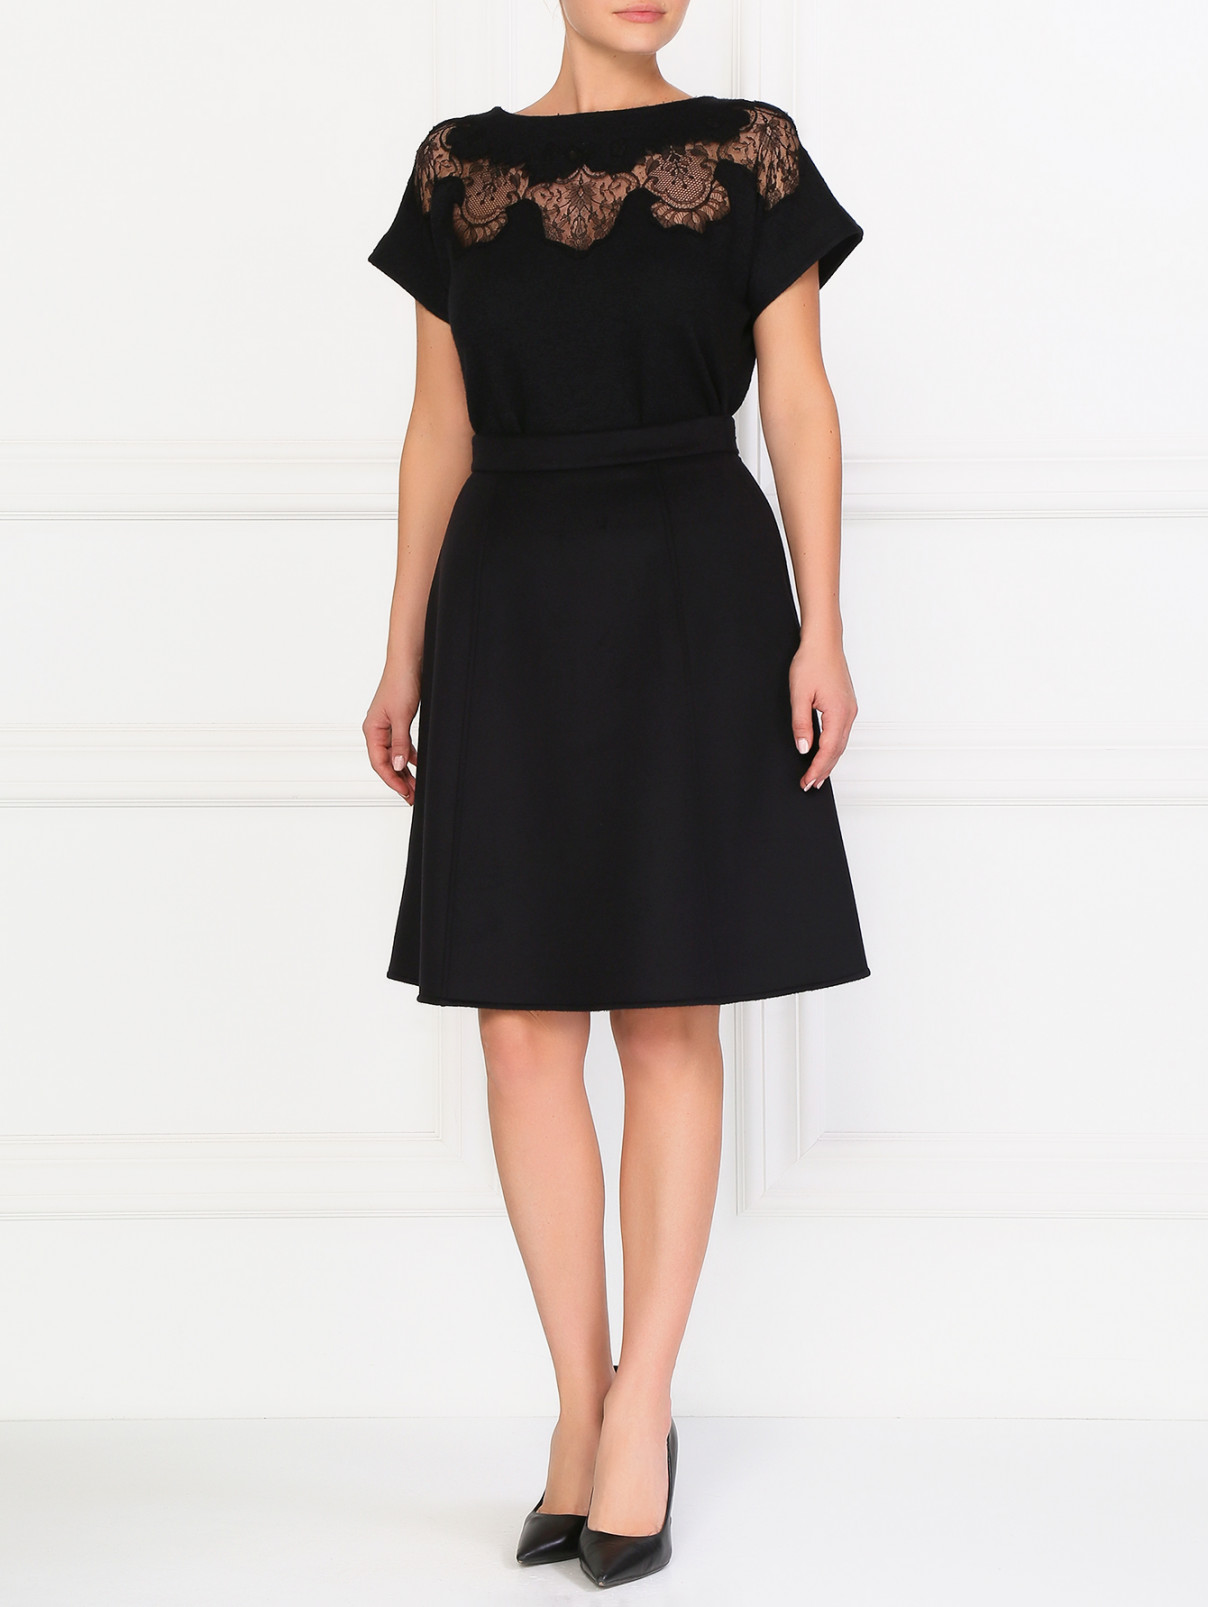 Шерстяная юбка-мини Ermanno Scervino  –  Модель Общий вид  – Цвет:  Черный